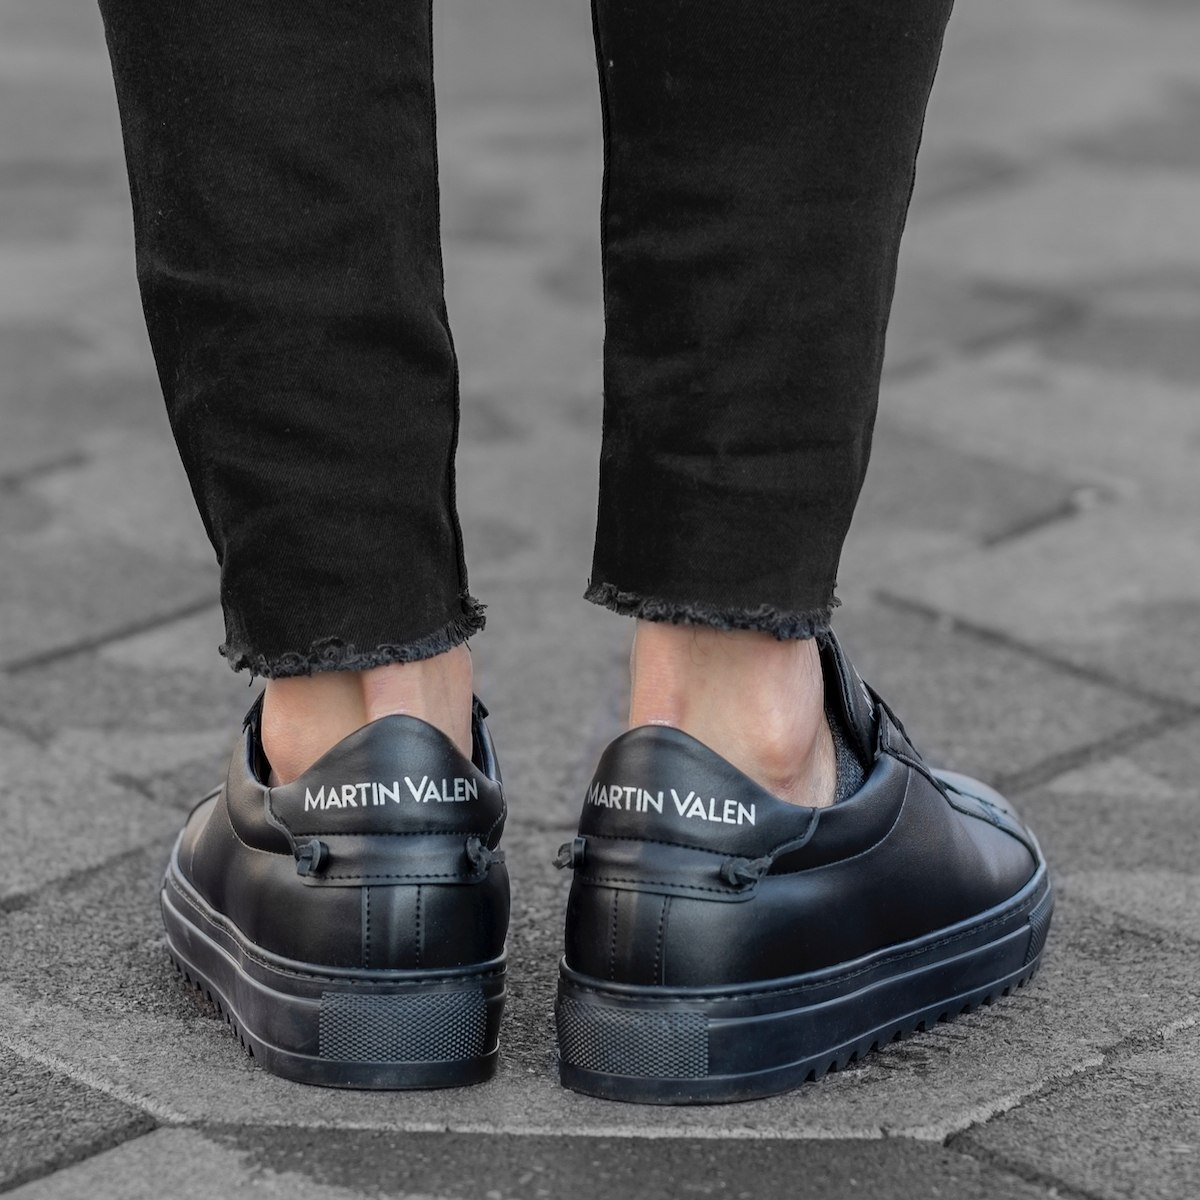 Men's Low Top Sneakers Shoes in Black | Martin Valen